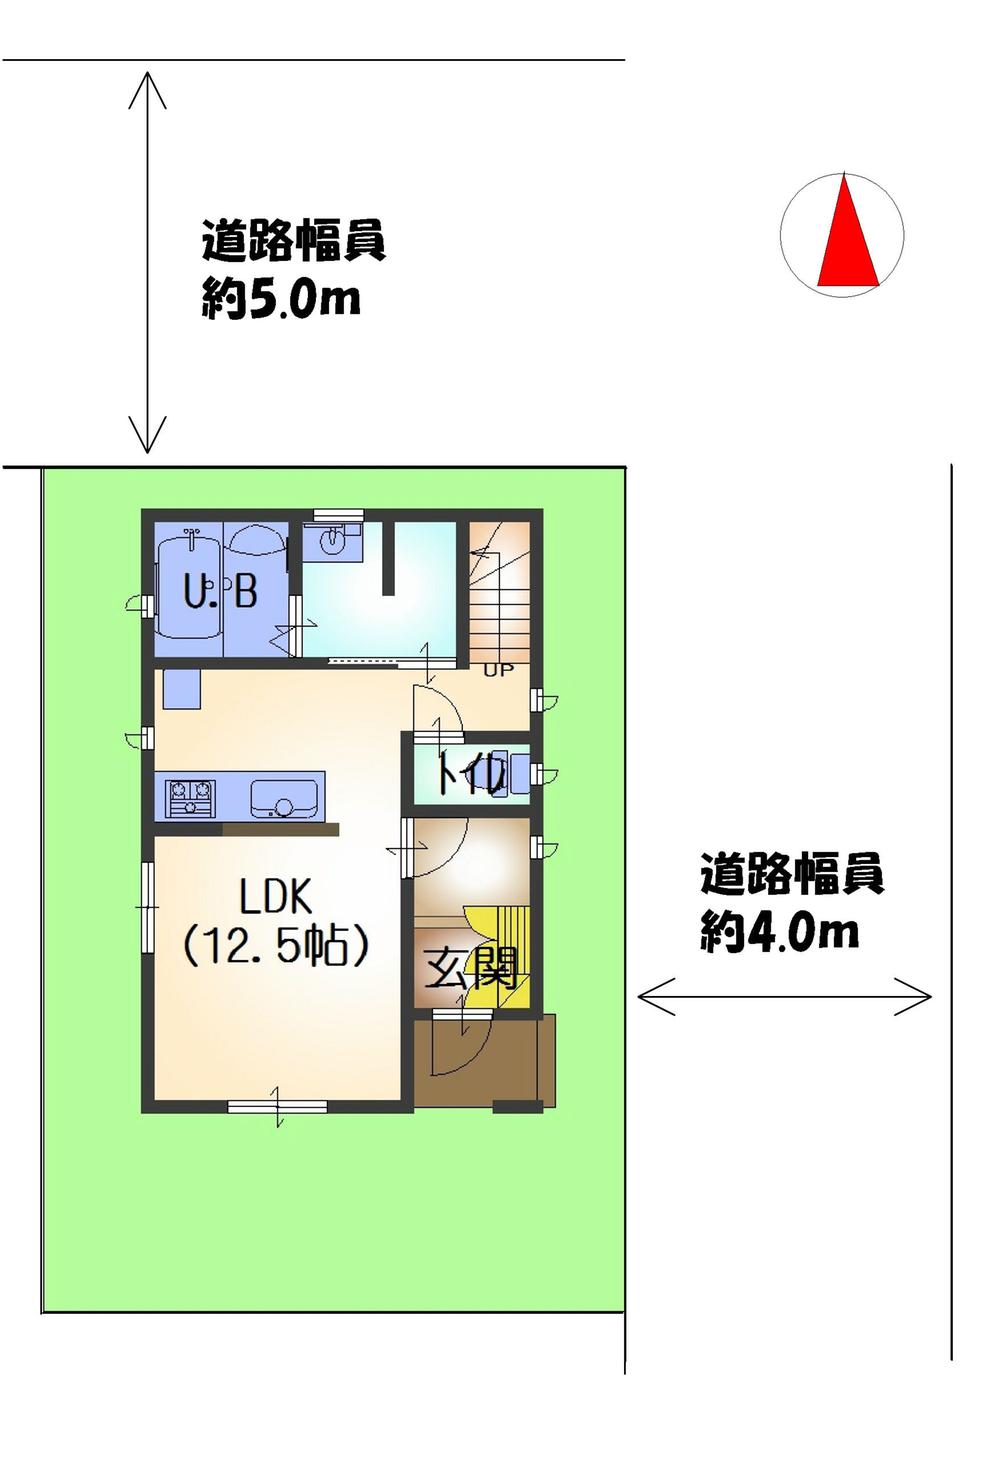 Compartment figure. 28,700,000 yen, 3LDK, Land area 74.51 sq m , Building area 68.12 sq m